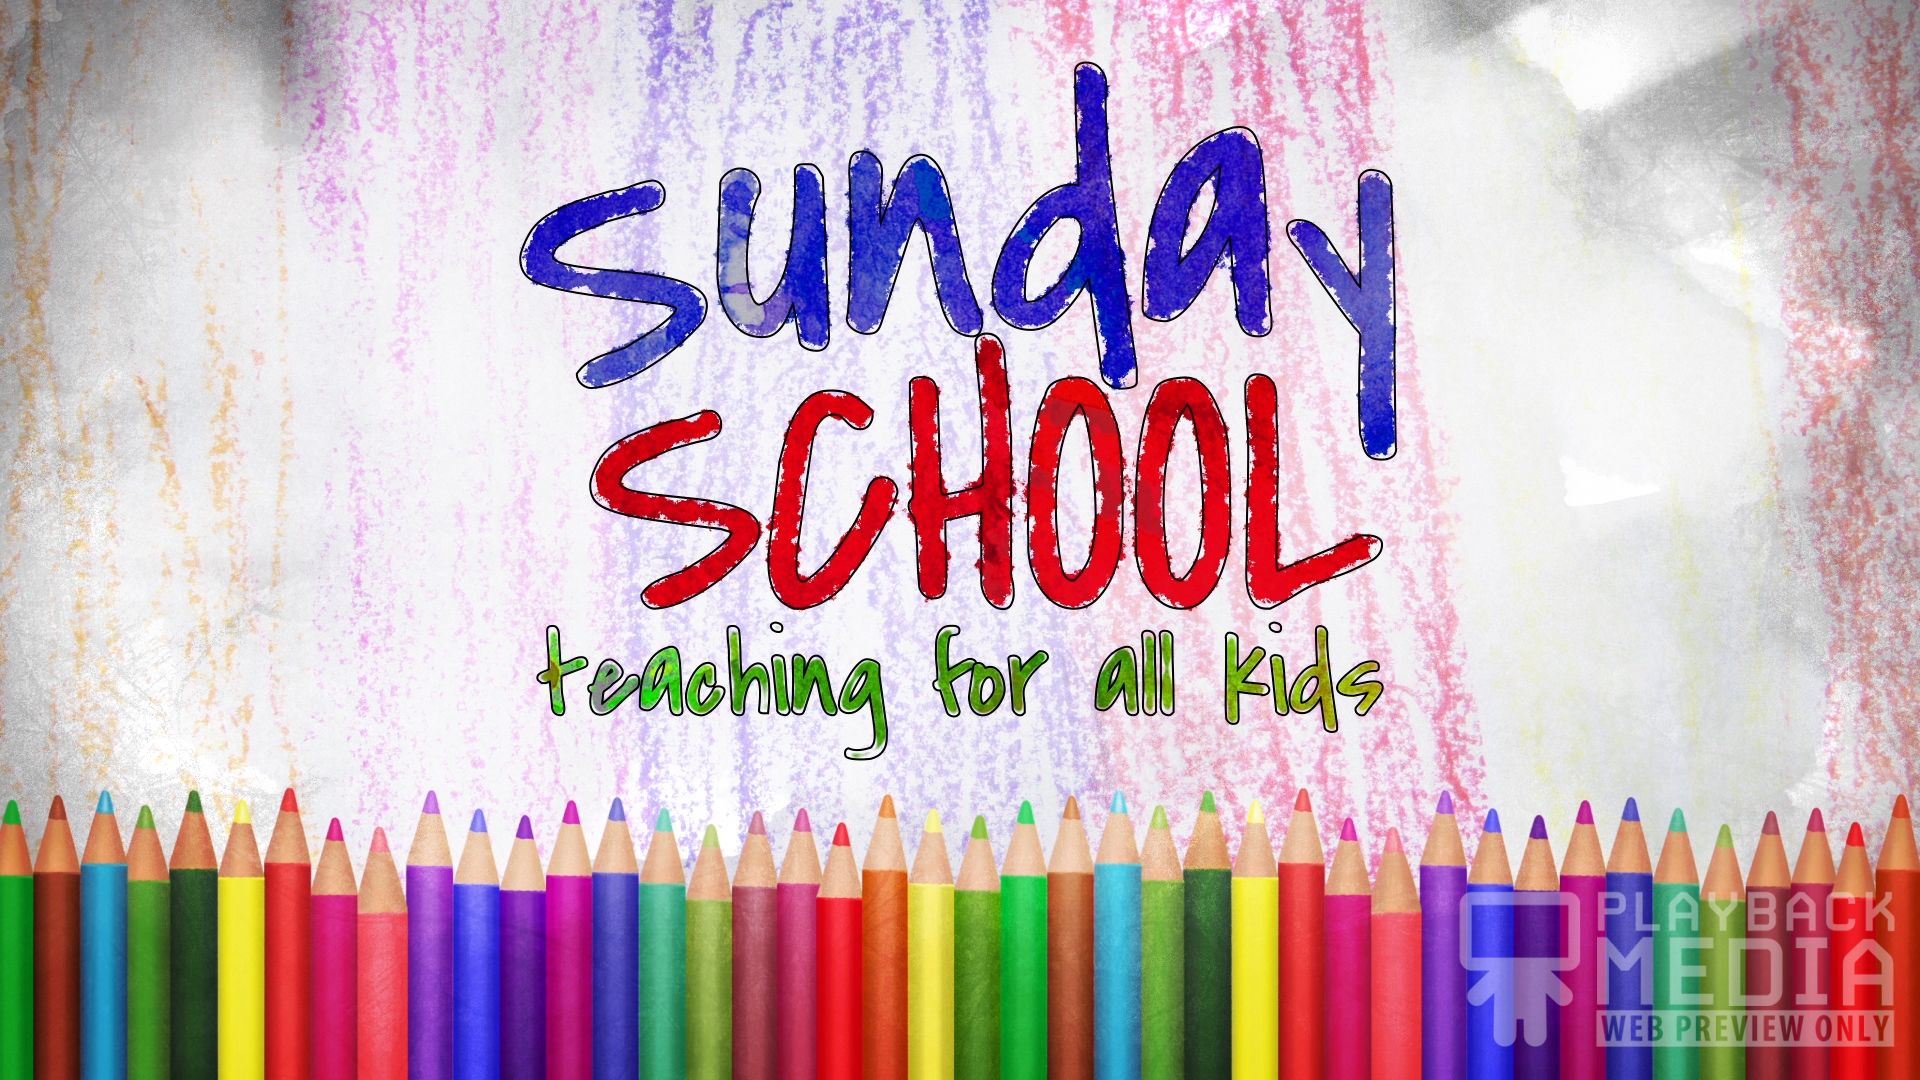 Color Pencils Sunday School Still - Playback Media